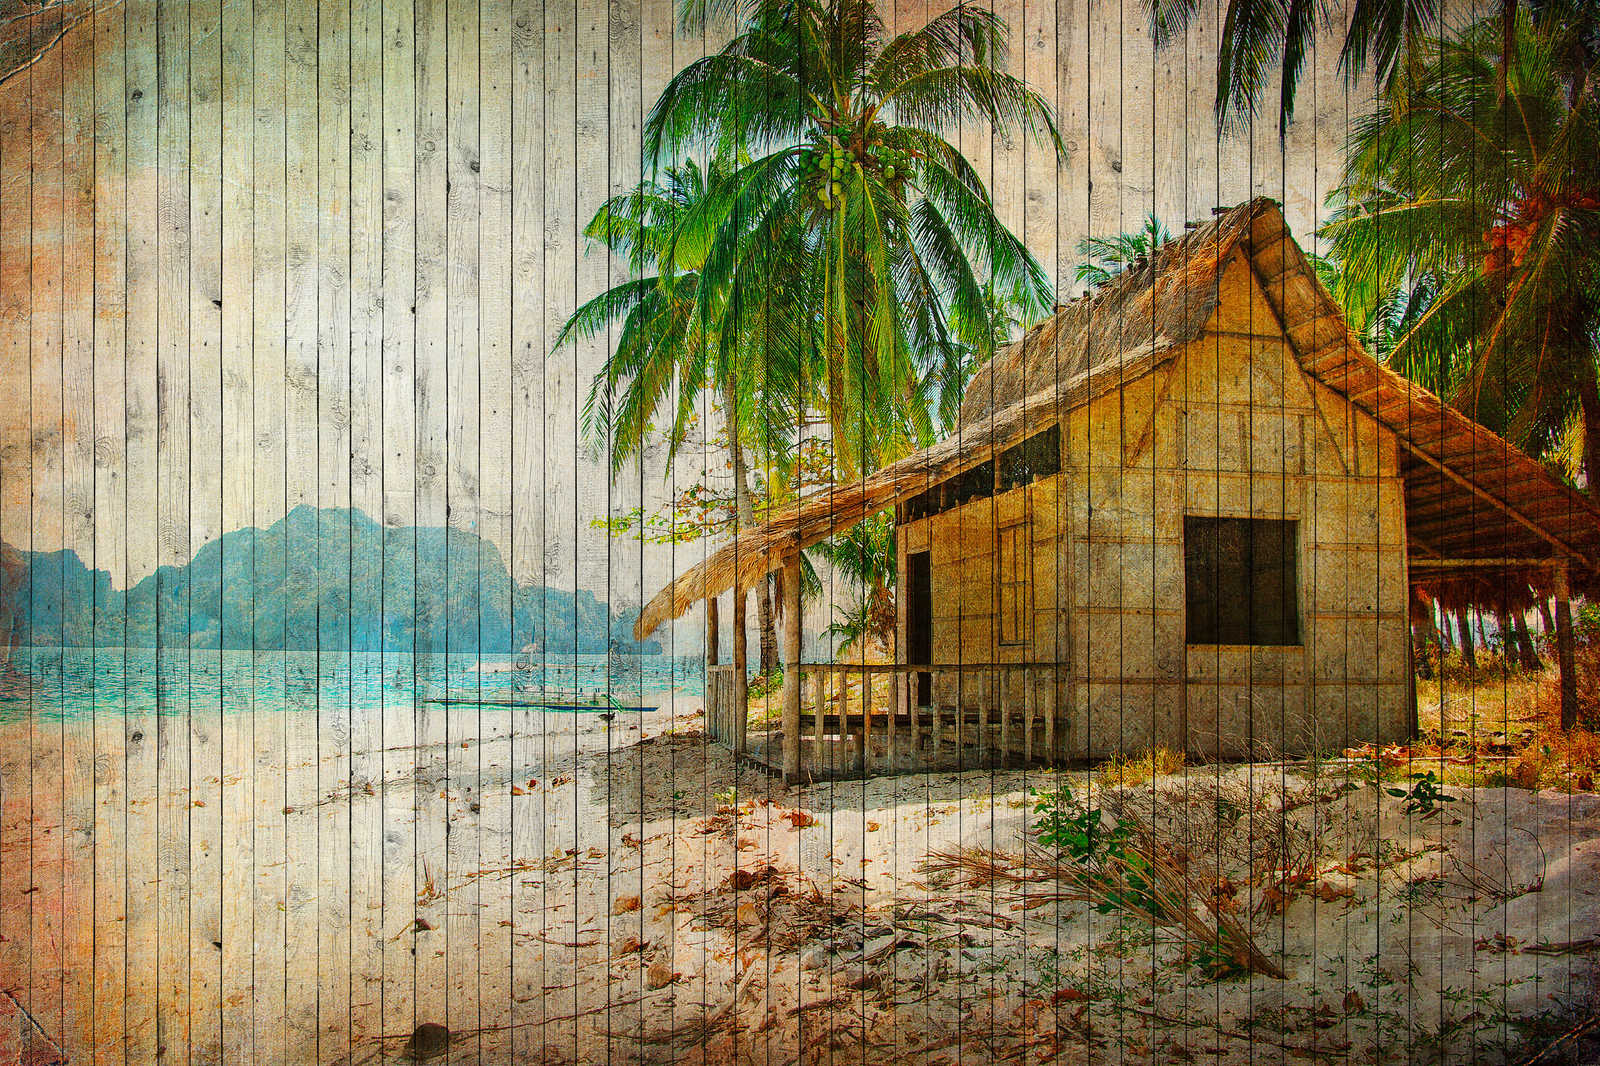             Tahiti 1 - Plage des mers du Sud toile effet planche en panneau de bois - 0,90 m x 0,60 m
        